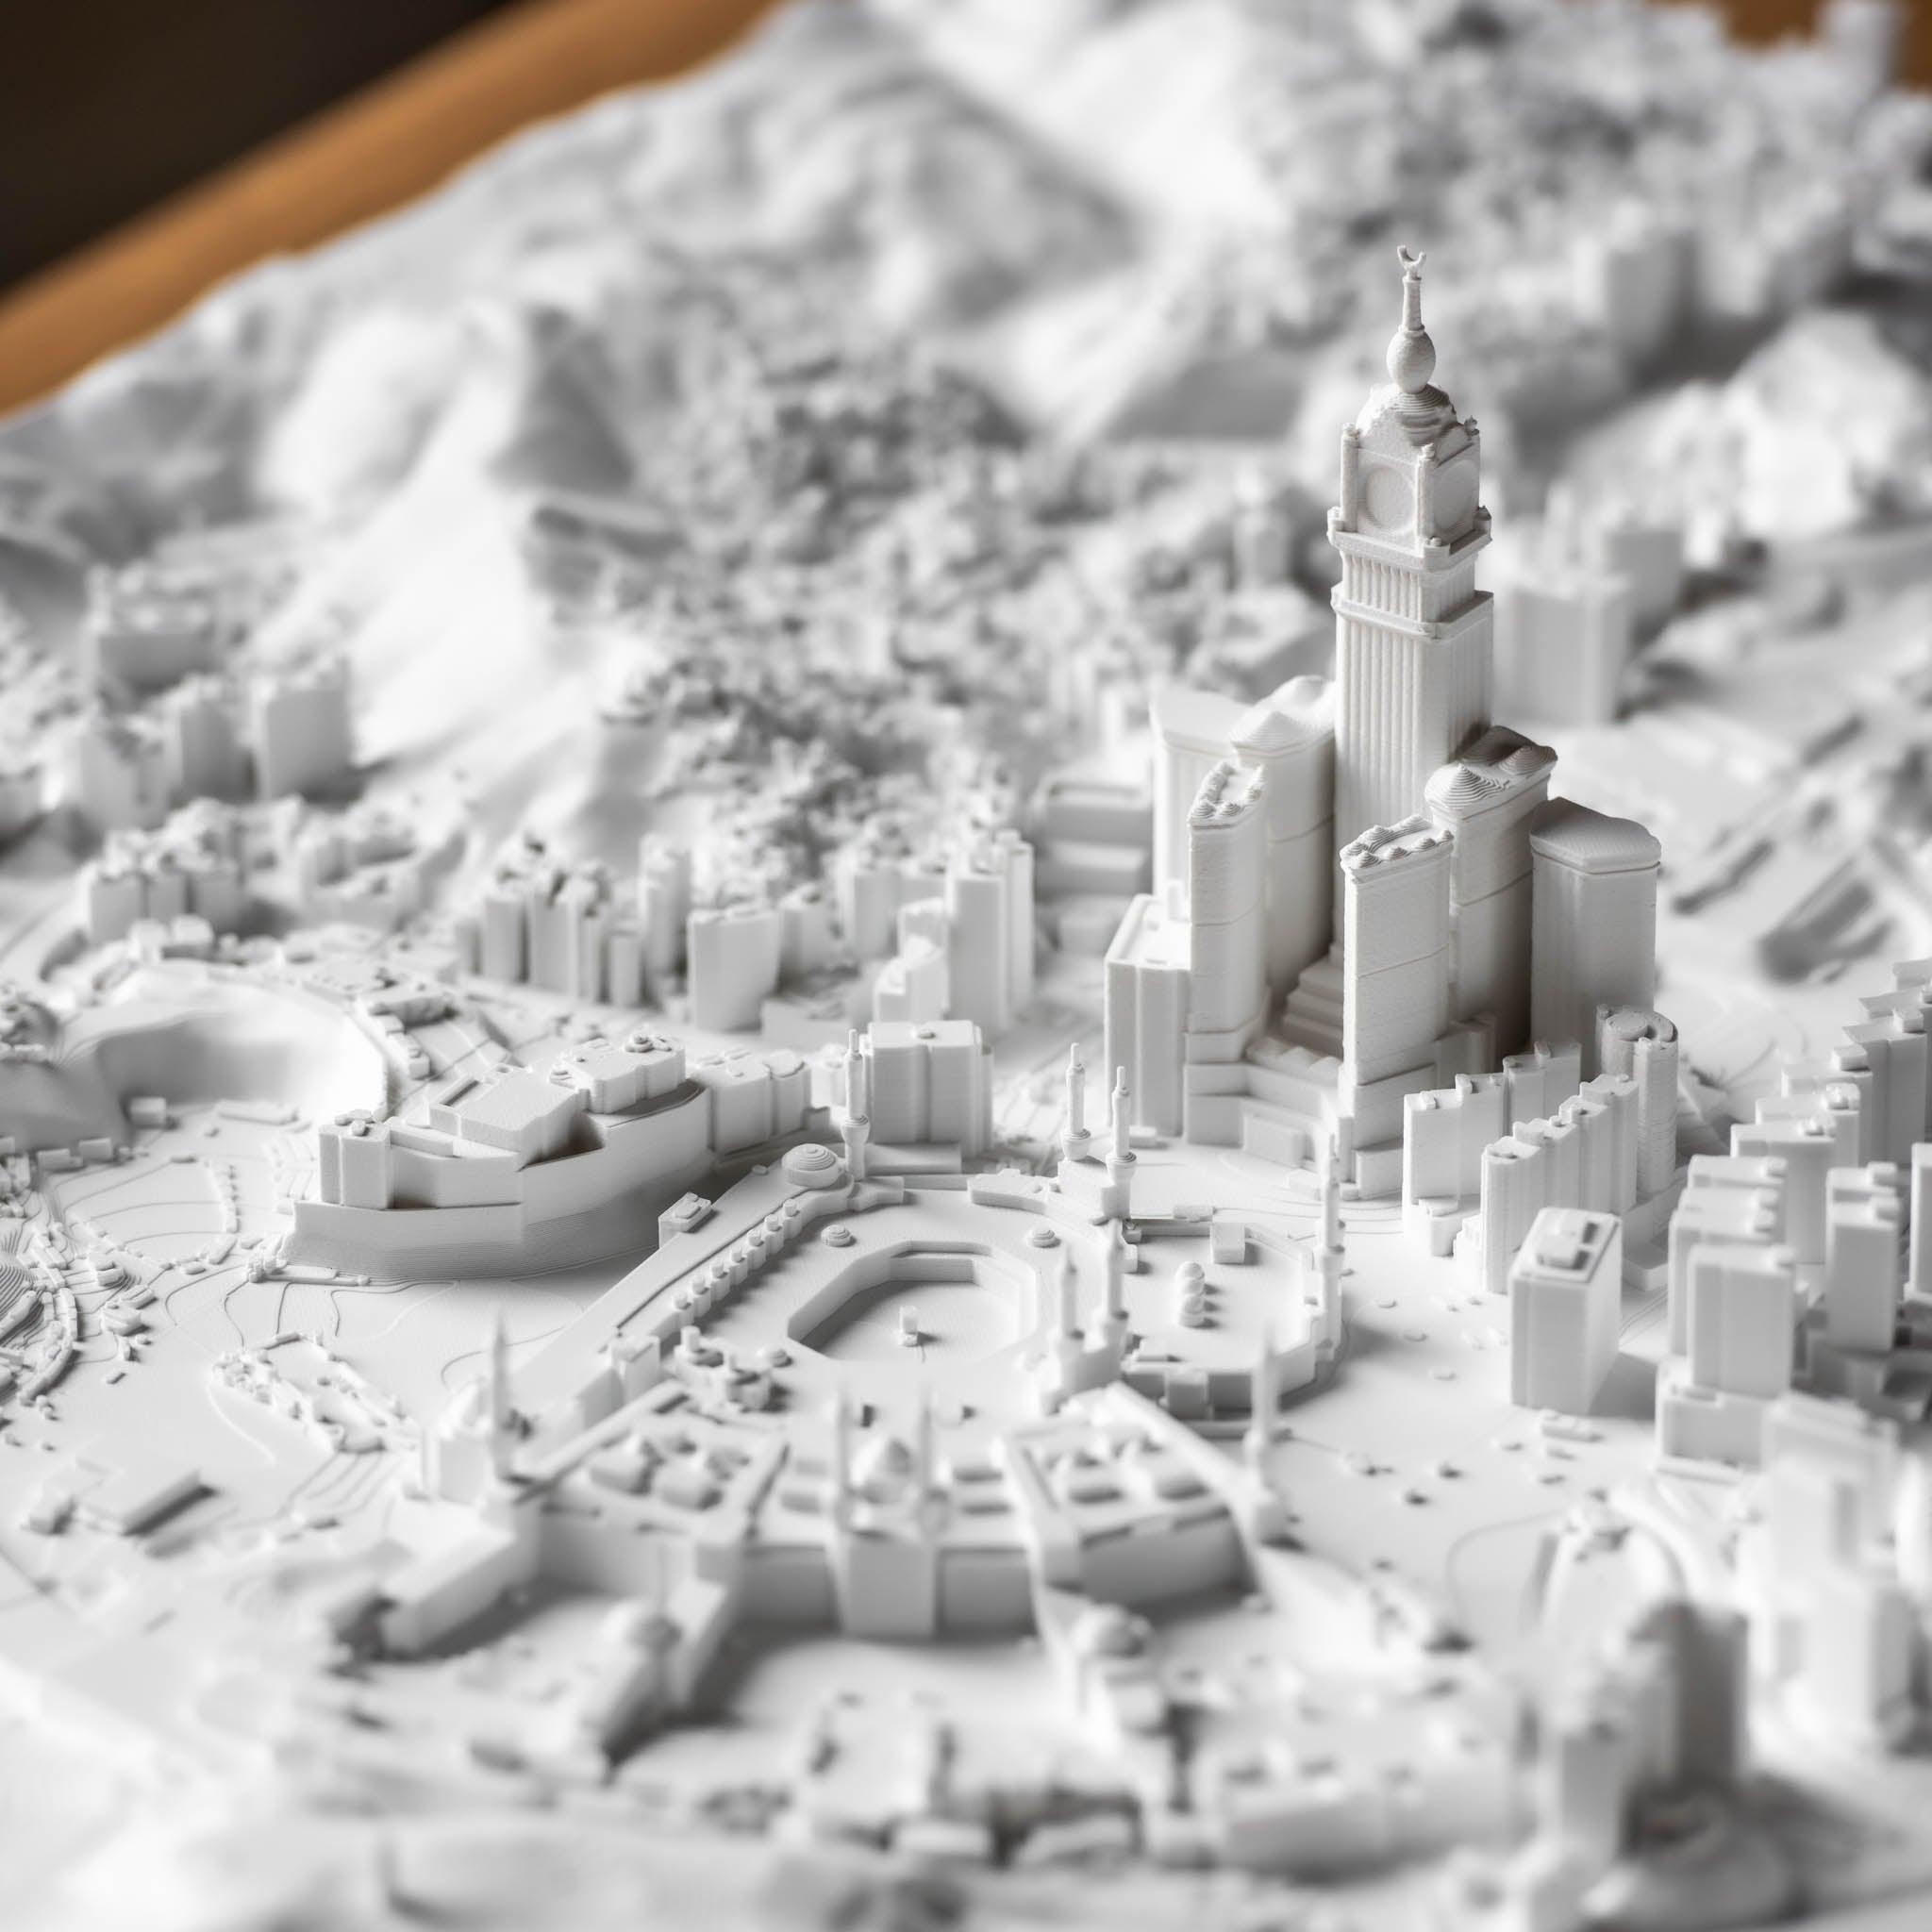 Mecca Frame 3D City Model Frame, Middle East - CITYFRAMES